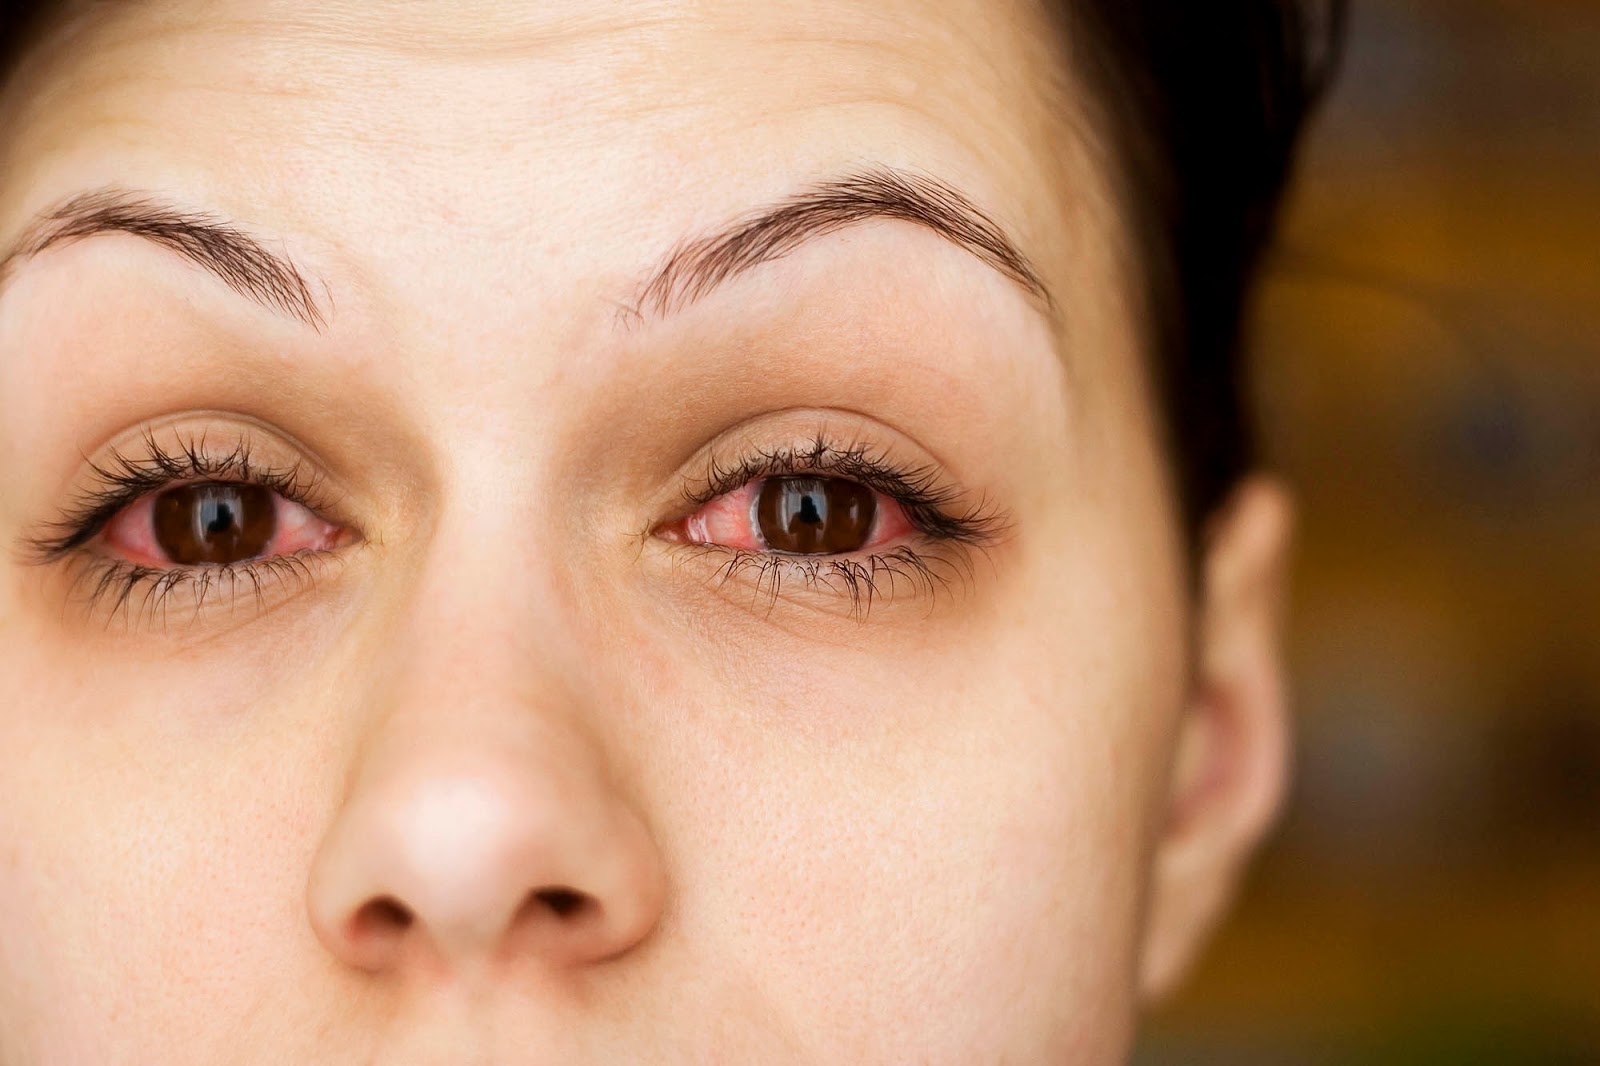 Nguyên nhân gây ra đau mắt đỏ là gì?
